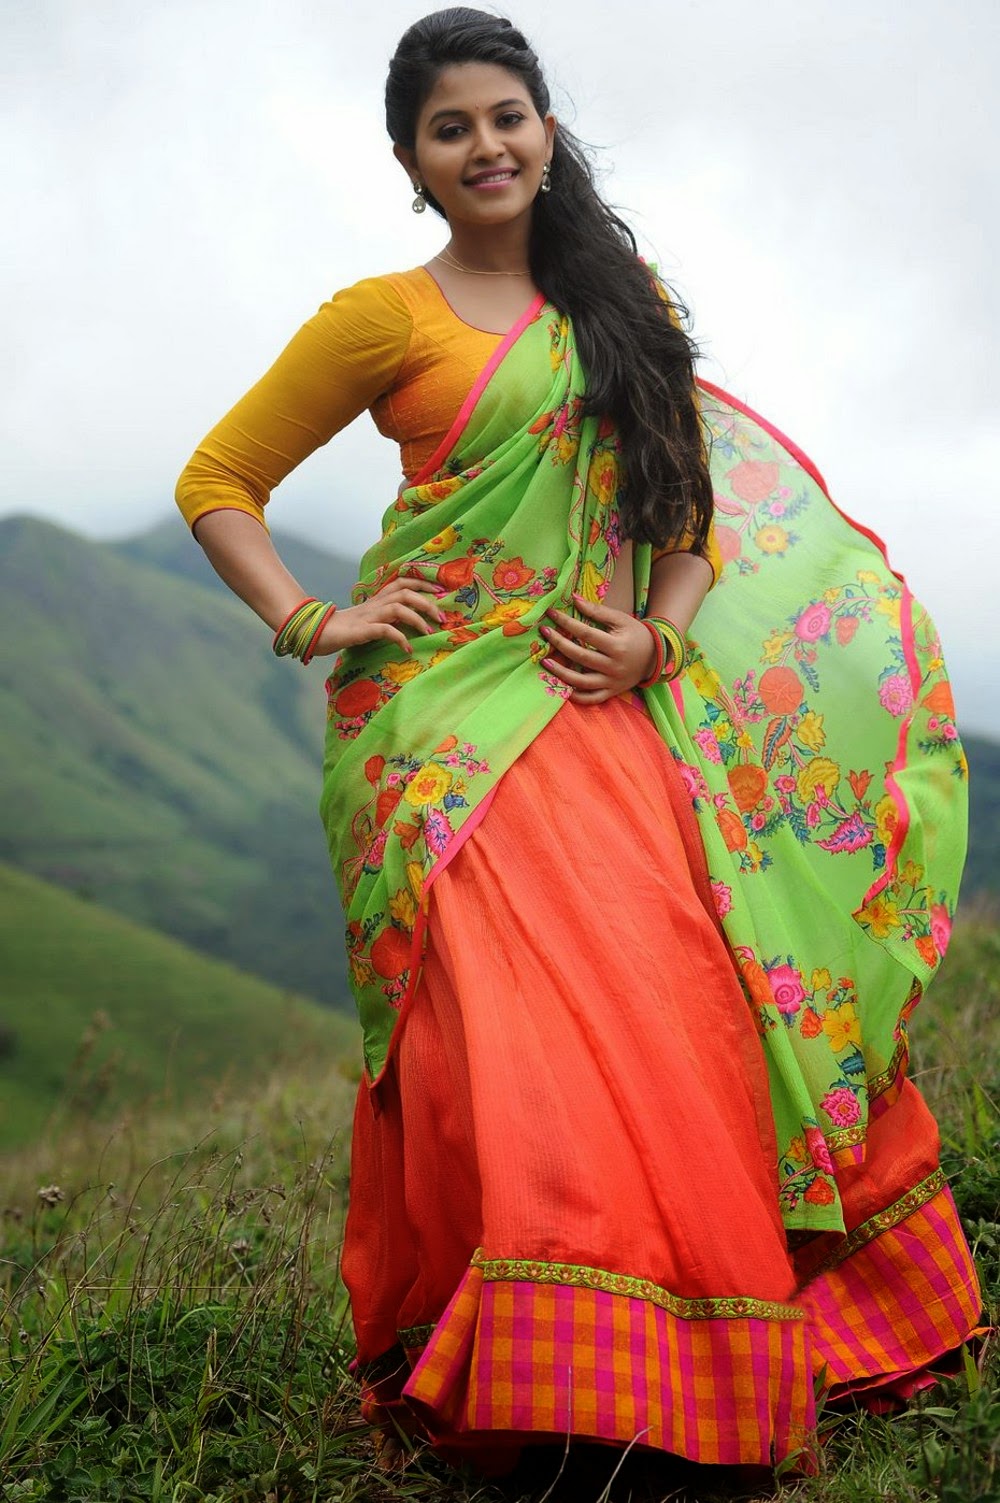 Anjali Hot Photos in Saree from Geethanjali.